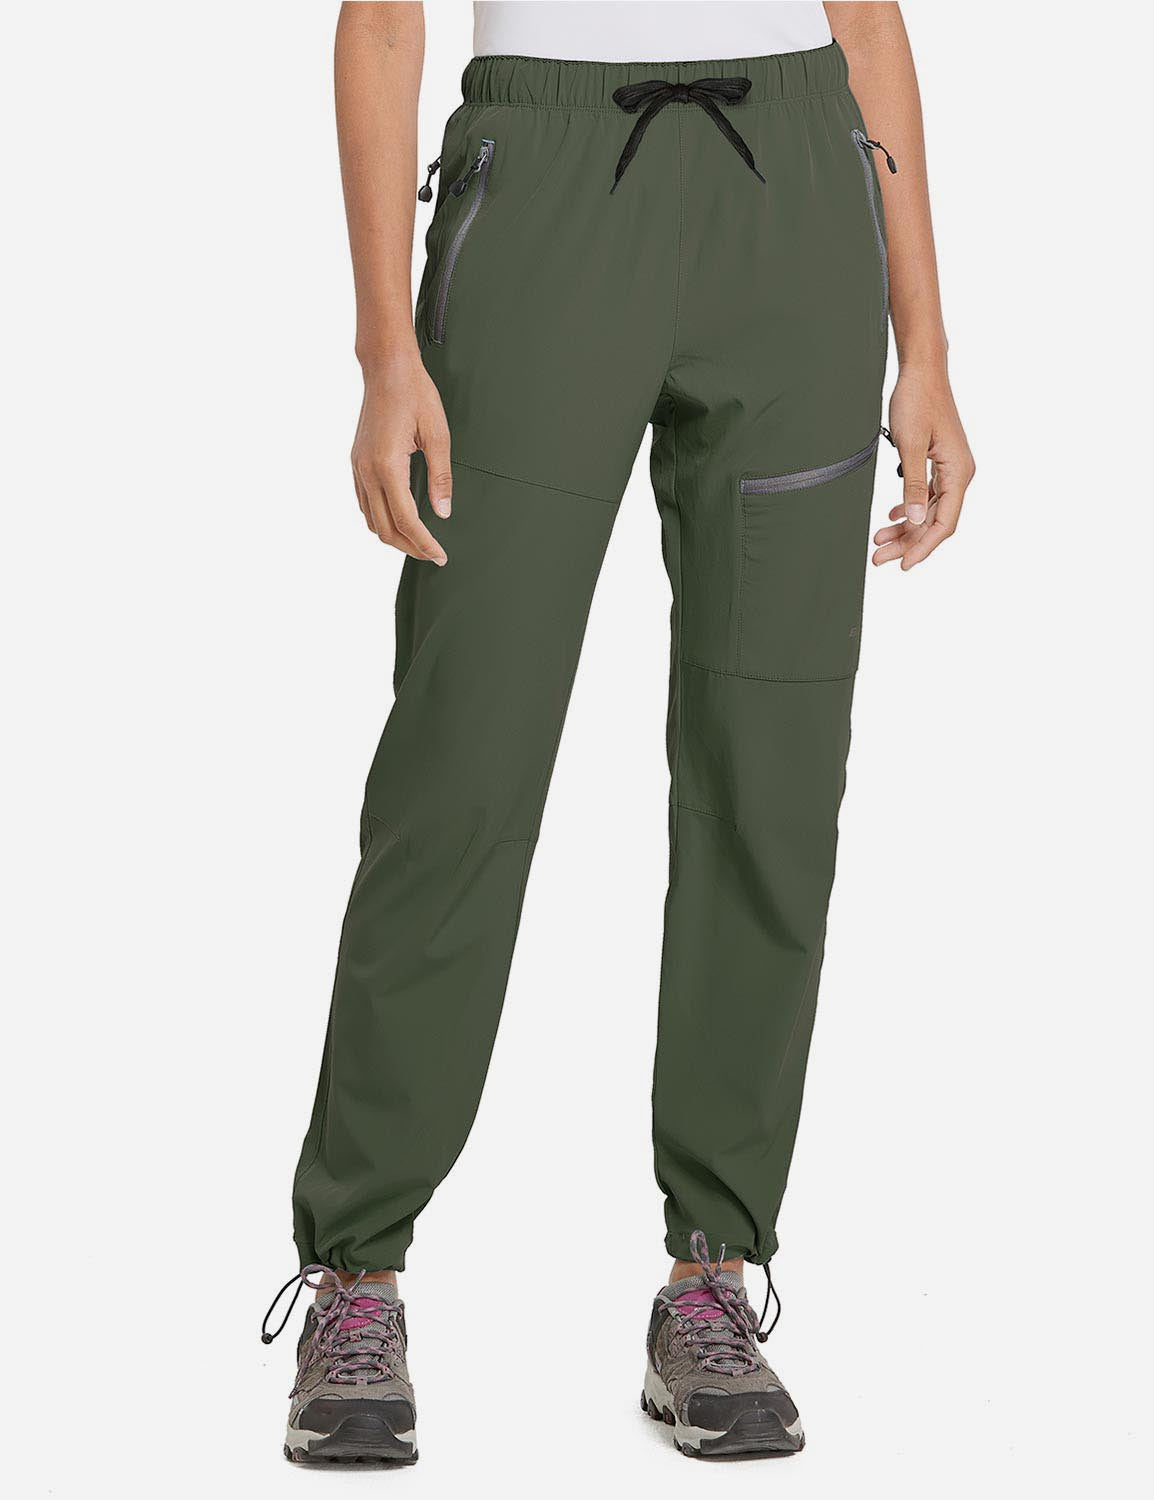 GetUSCart- BALEAF Women's Hiking Cargo Pants Outdoor Lightweight Capris  Water Resistant UPF 50 Zipper Pockets